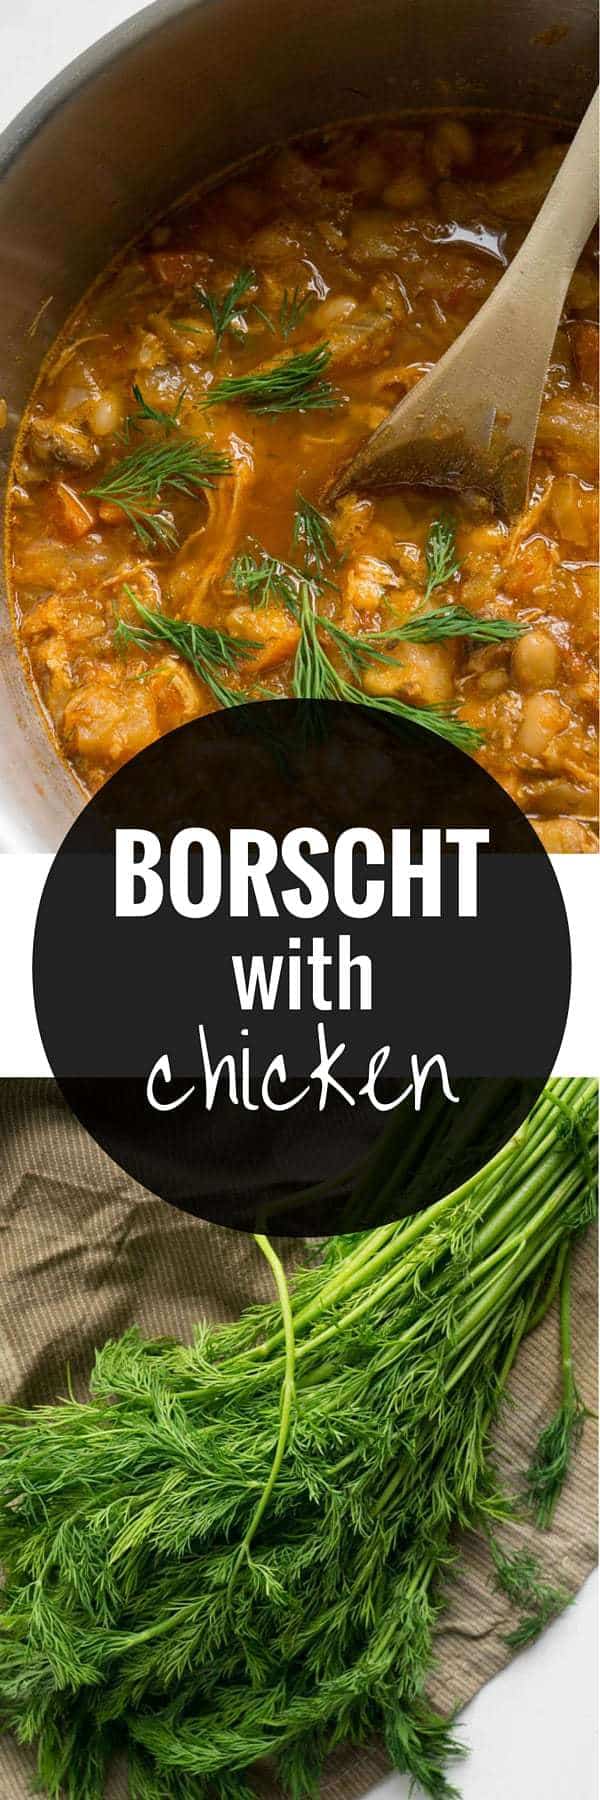 Borscht with Chicken